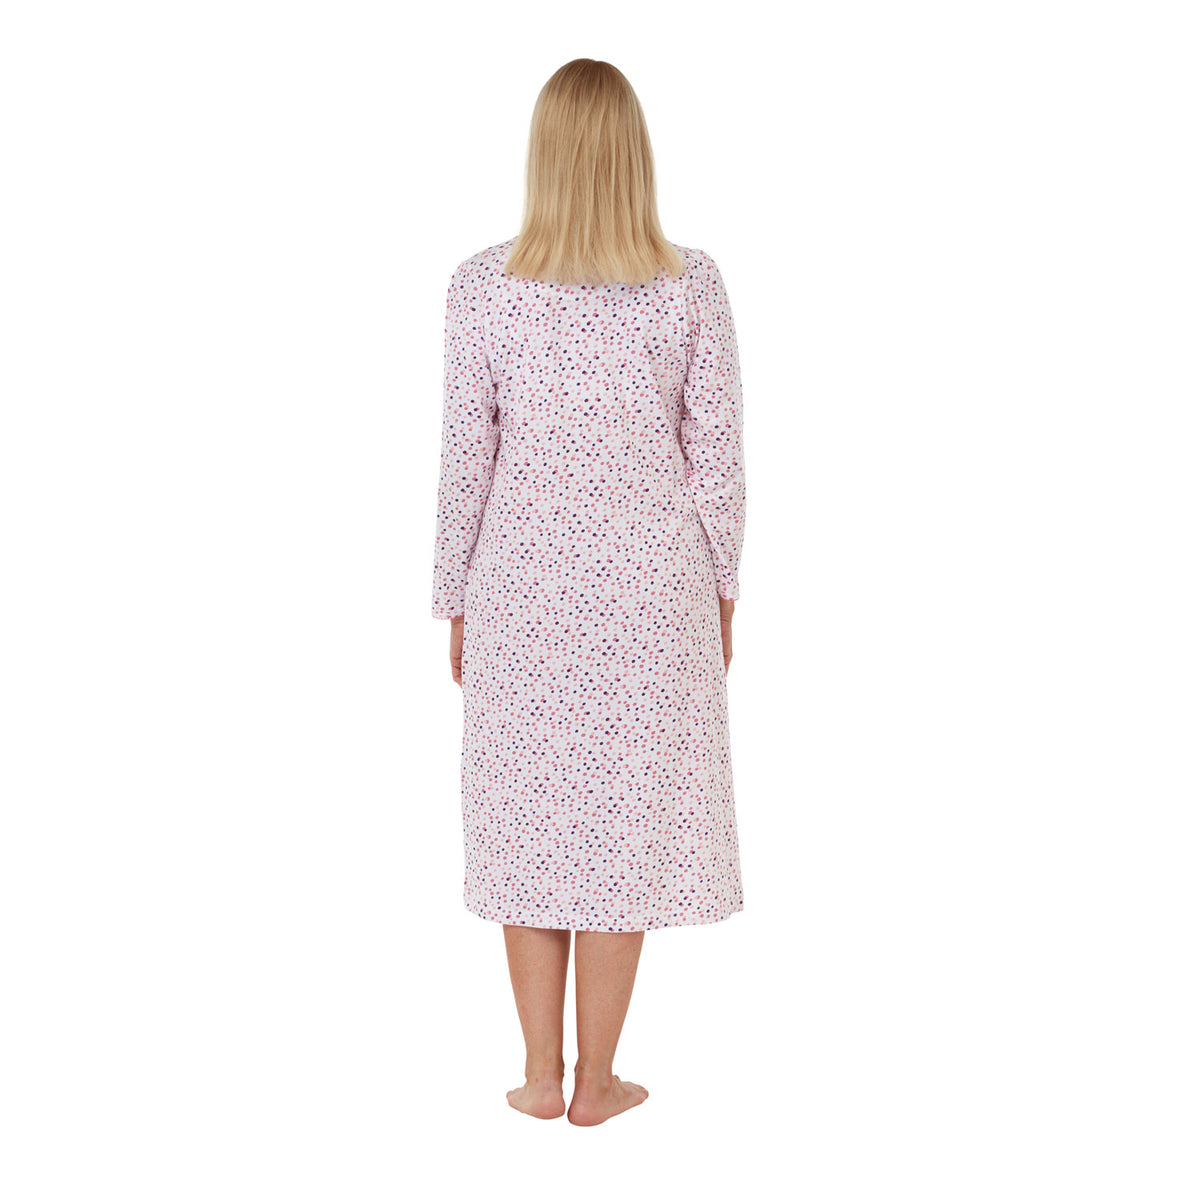 Allegra Spot Print Cotton Jersey Long Sleeve Nightdress - Rose